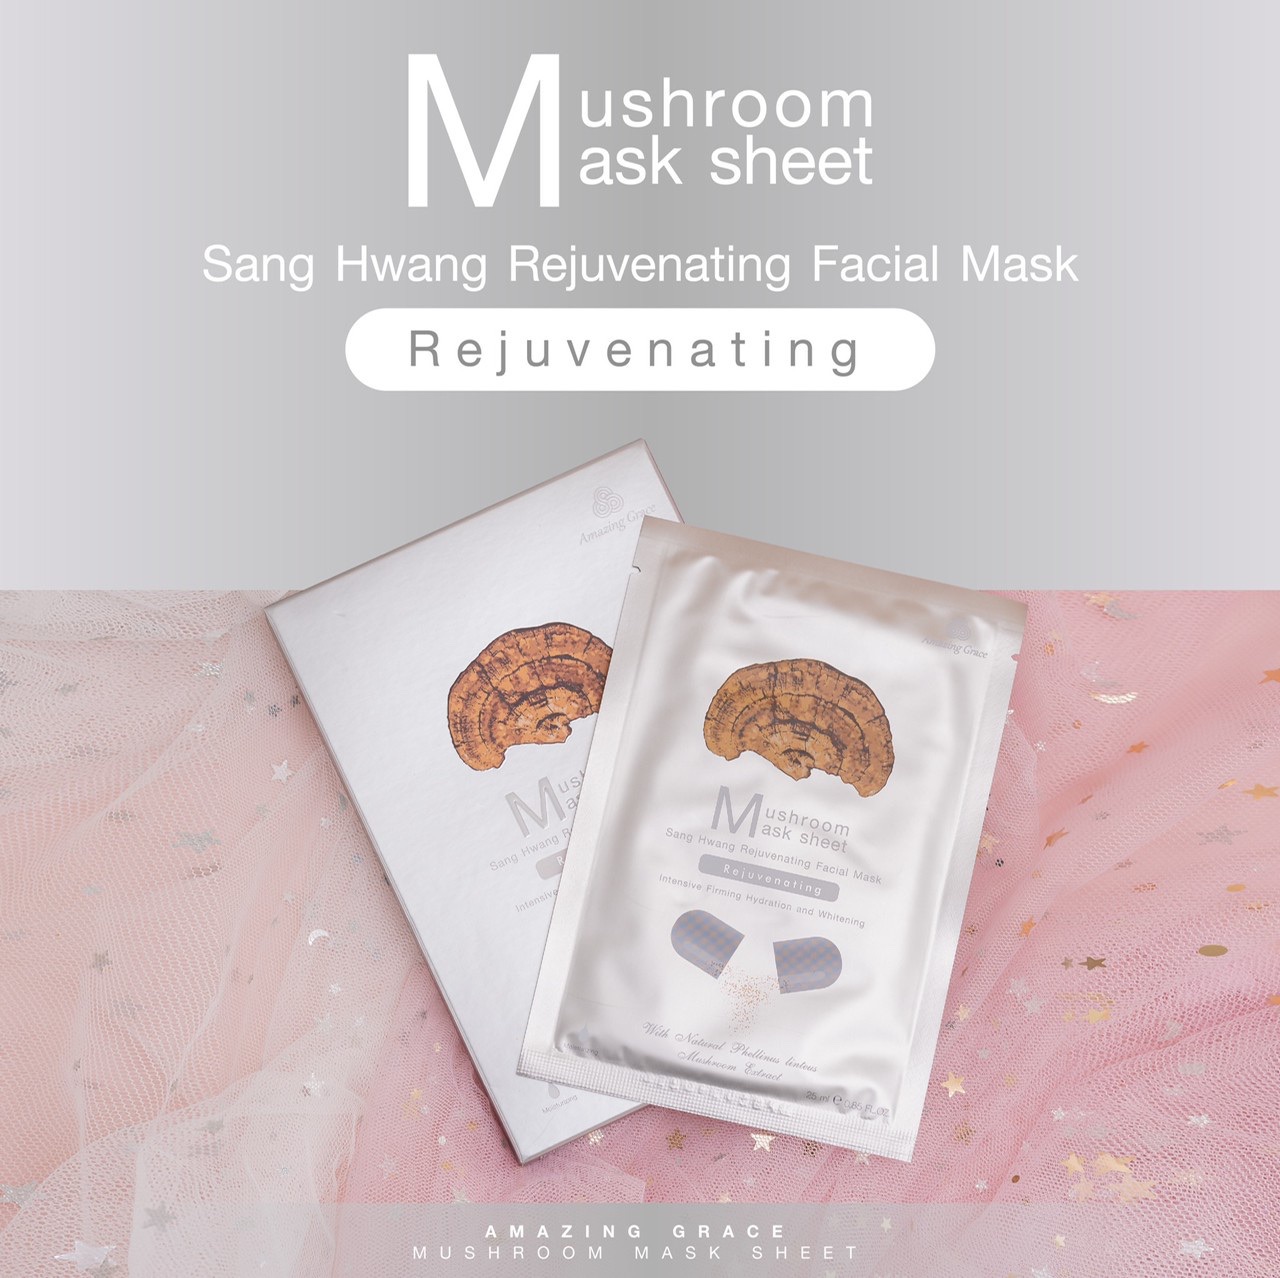 Sang Hwang Rejuvenating Facial Mask